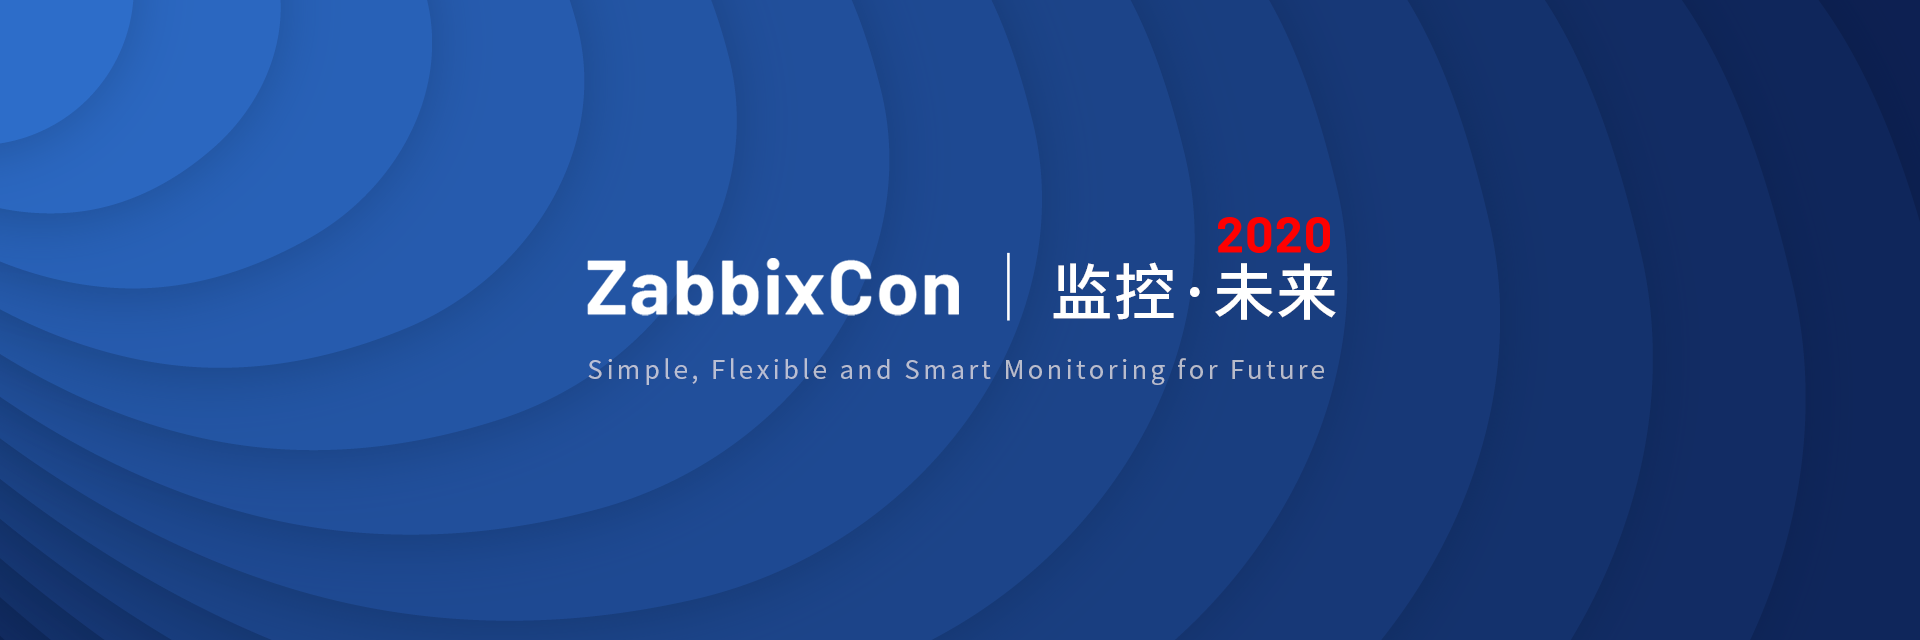 Zabbix 峰会2020